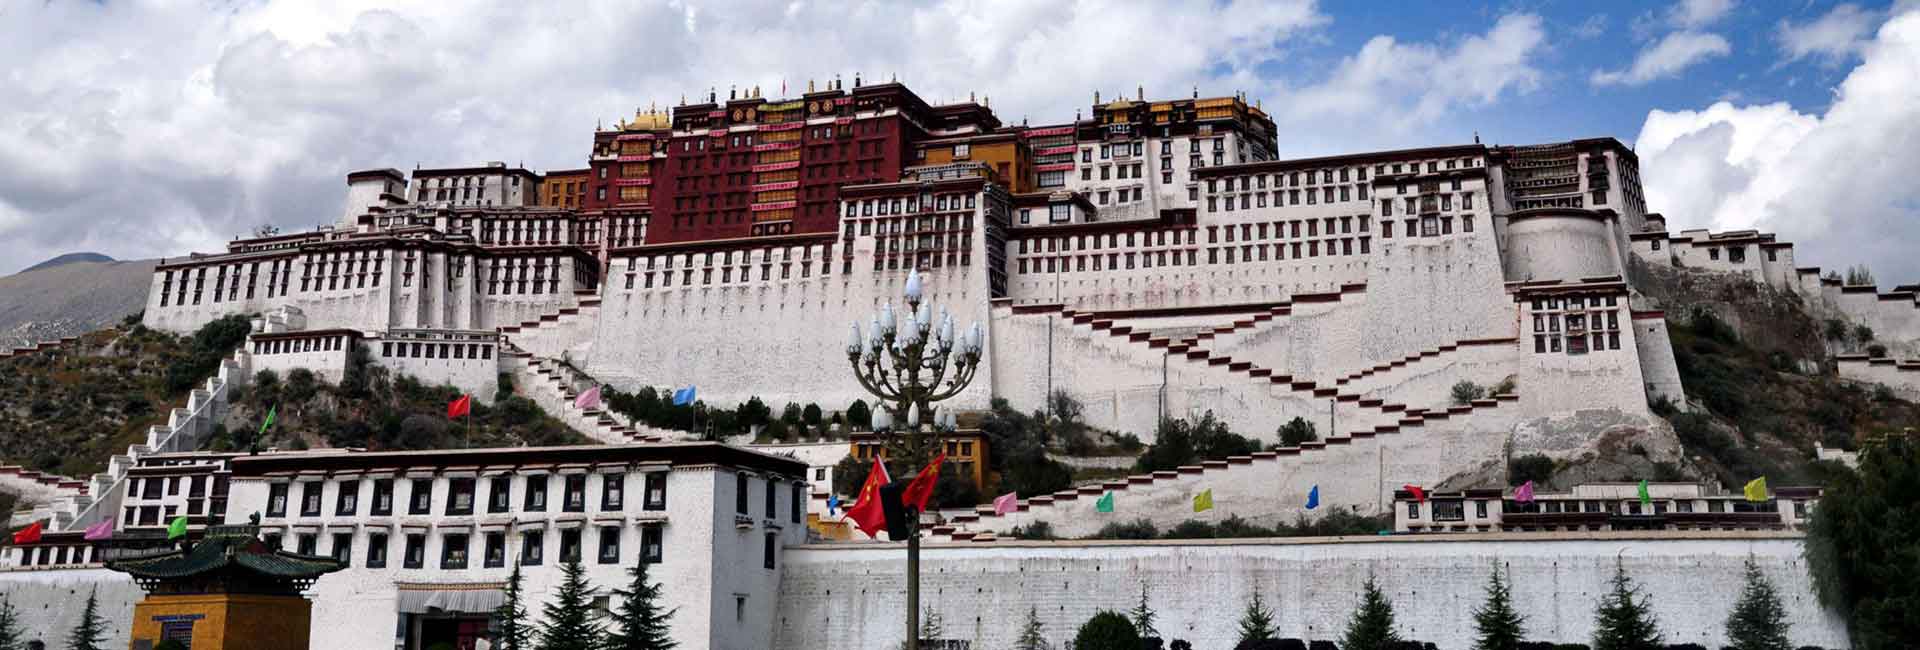 Lhasa - Potala Palace, Tibet Tours